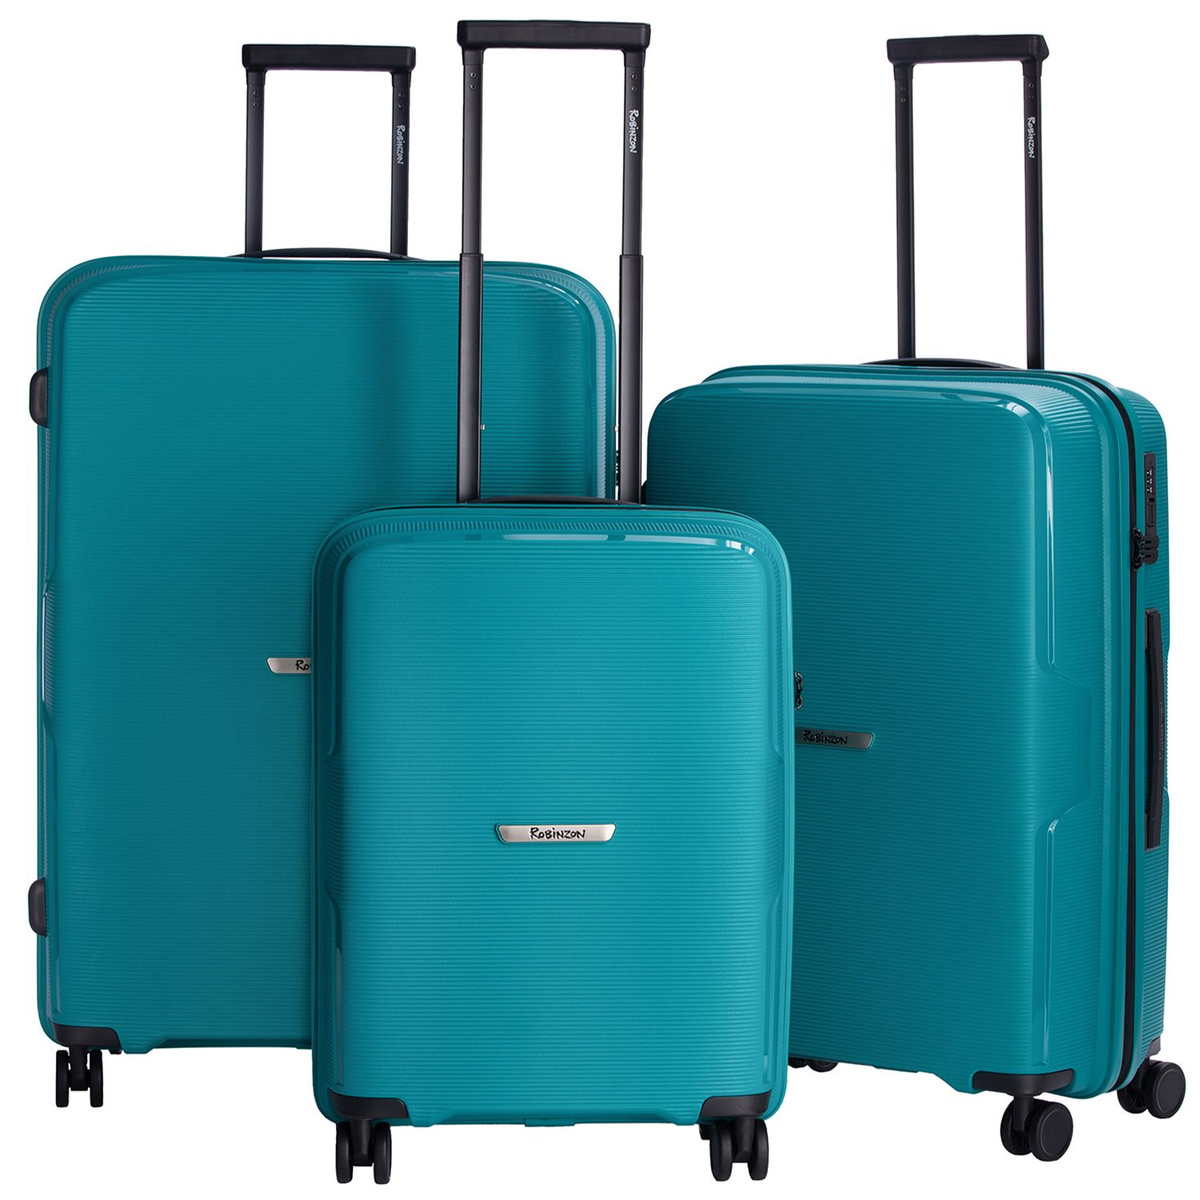 Небольшой размер чемодана S (до 55 см) идеально подходит для командировок и коротких поездок, а также позволяет взять чемодан в салон самолёта в качестве ручной клади.